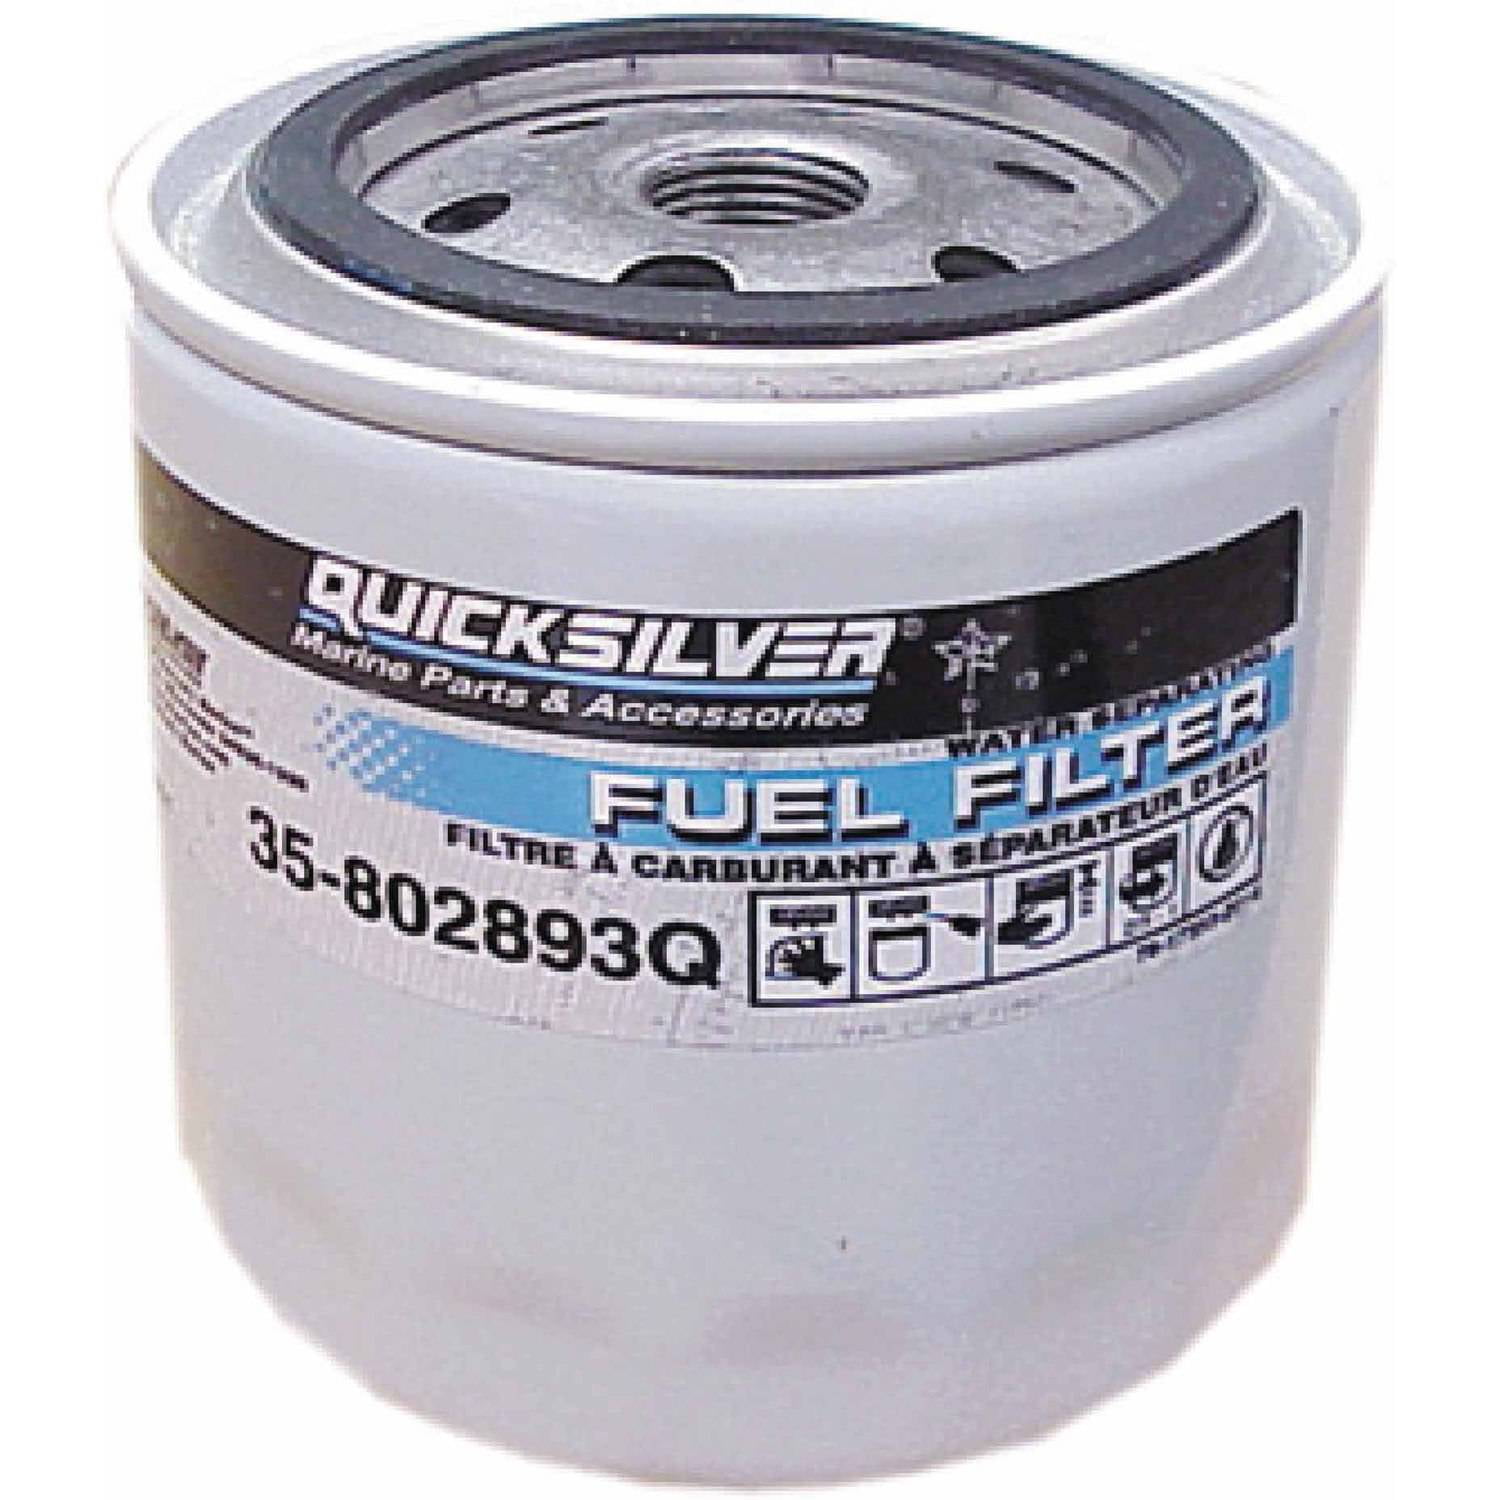 NEW OEM Quicksilver/MerCruiser Mercury Fuel Water Separator Filter  35-802893Q01 